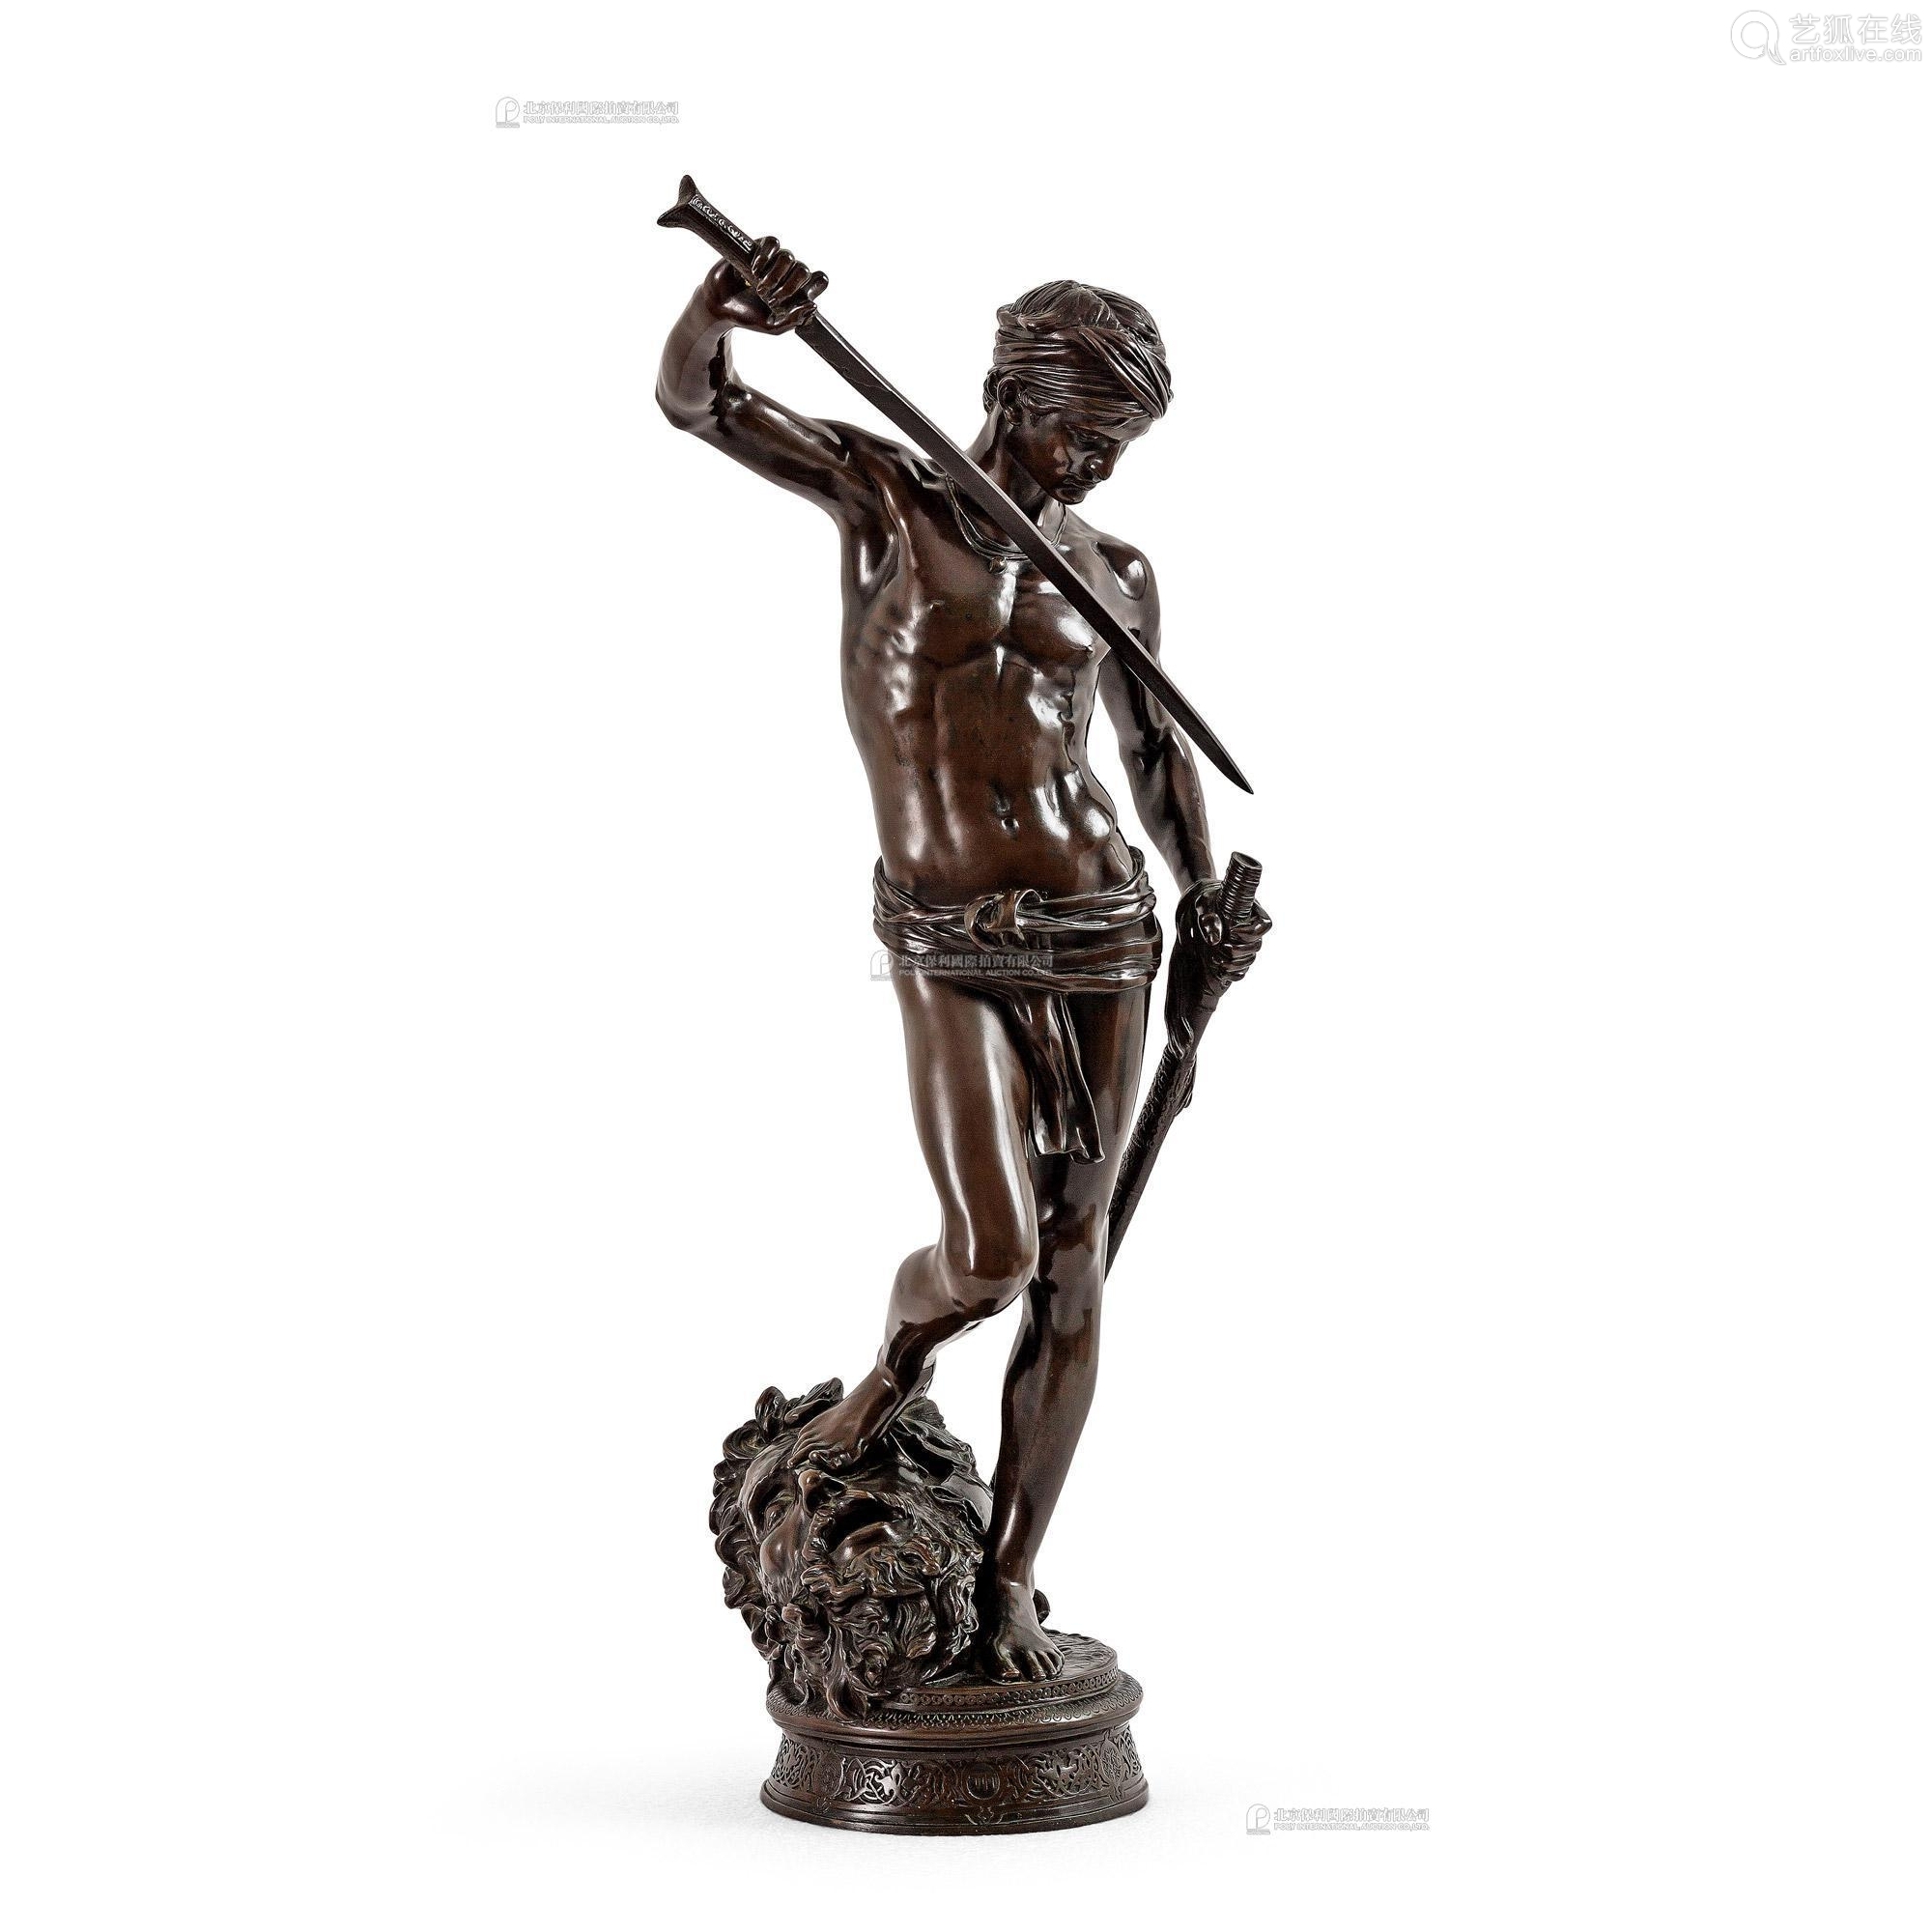 约1880年制 法国 antonin mercie作品 巴黎青铜雕塑《大卫与歌利亚》